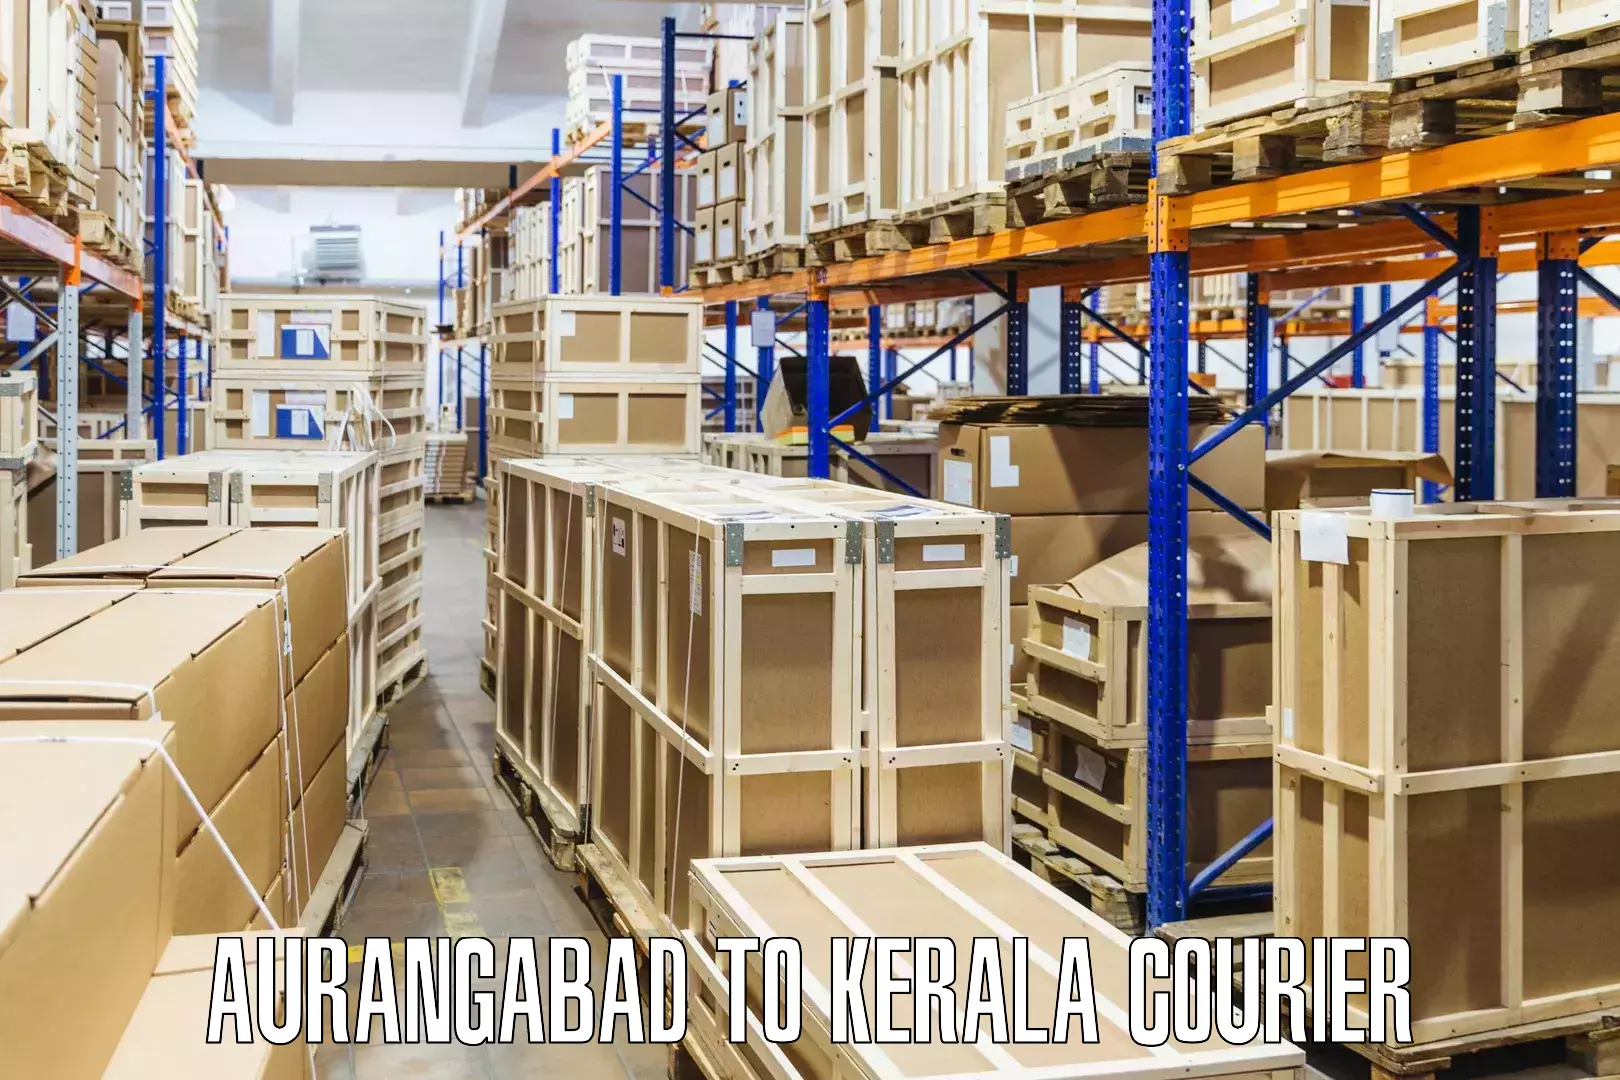 Express courier facilities Aurangabad to Kerala